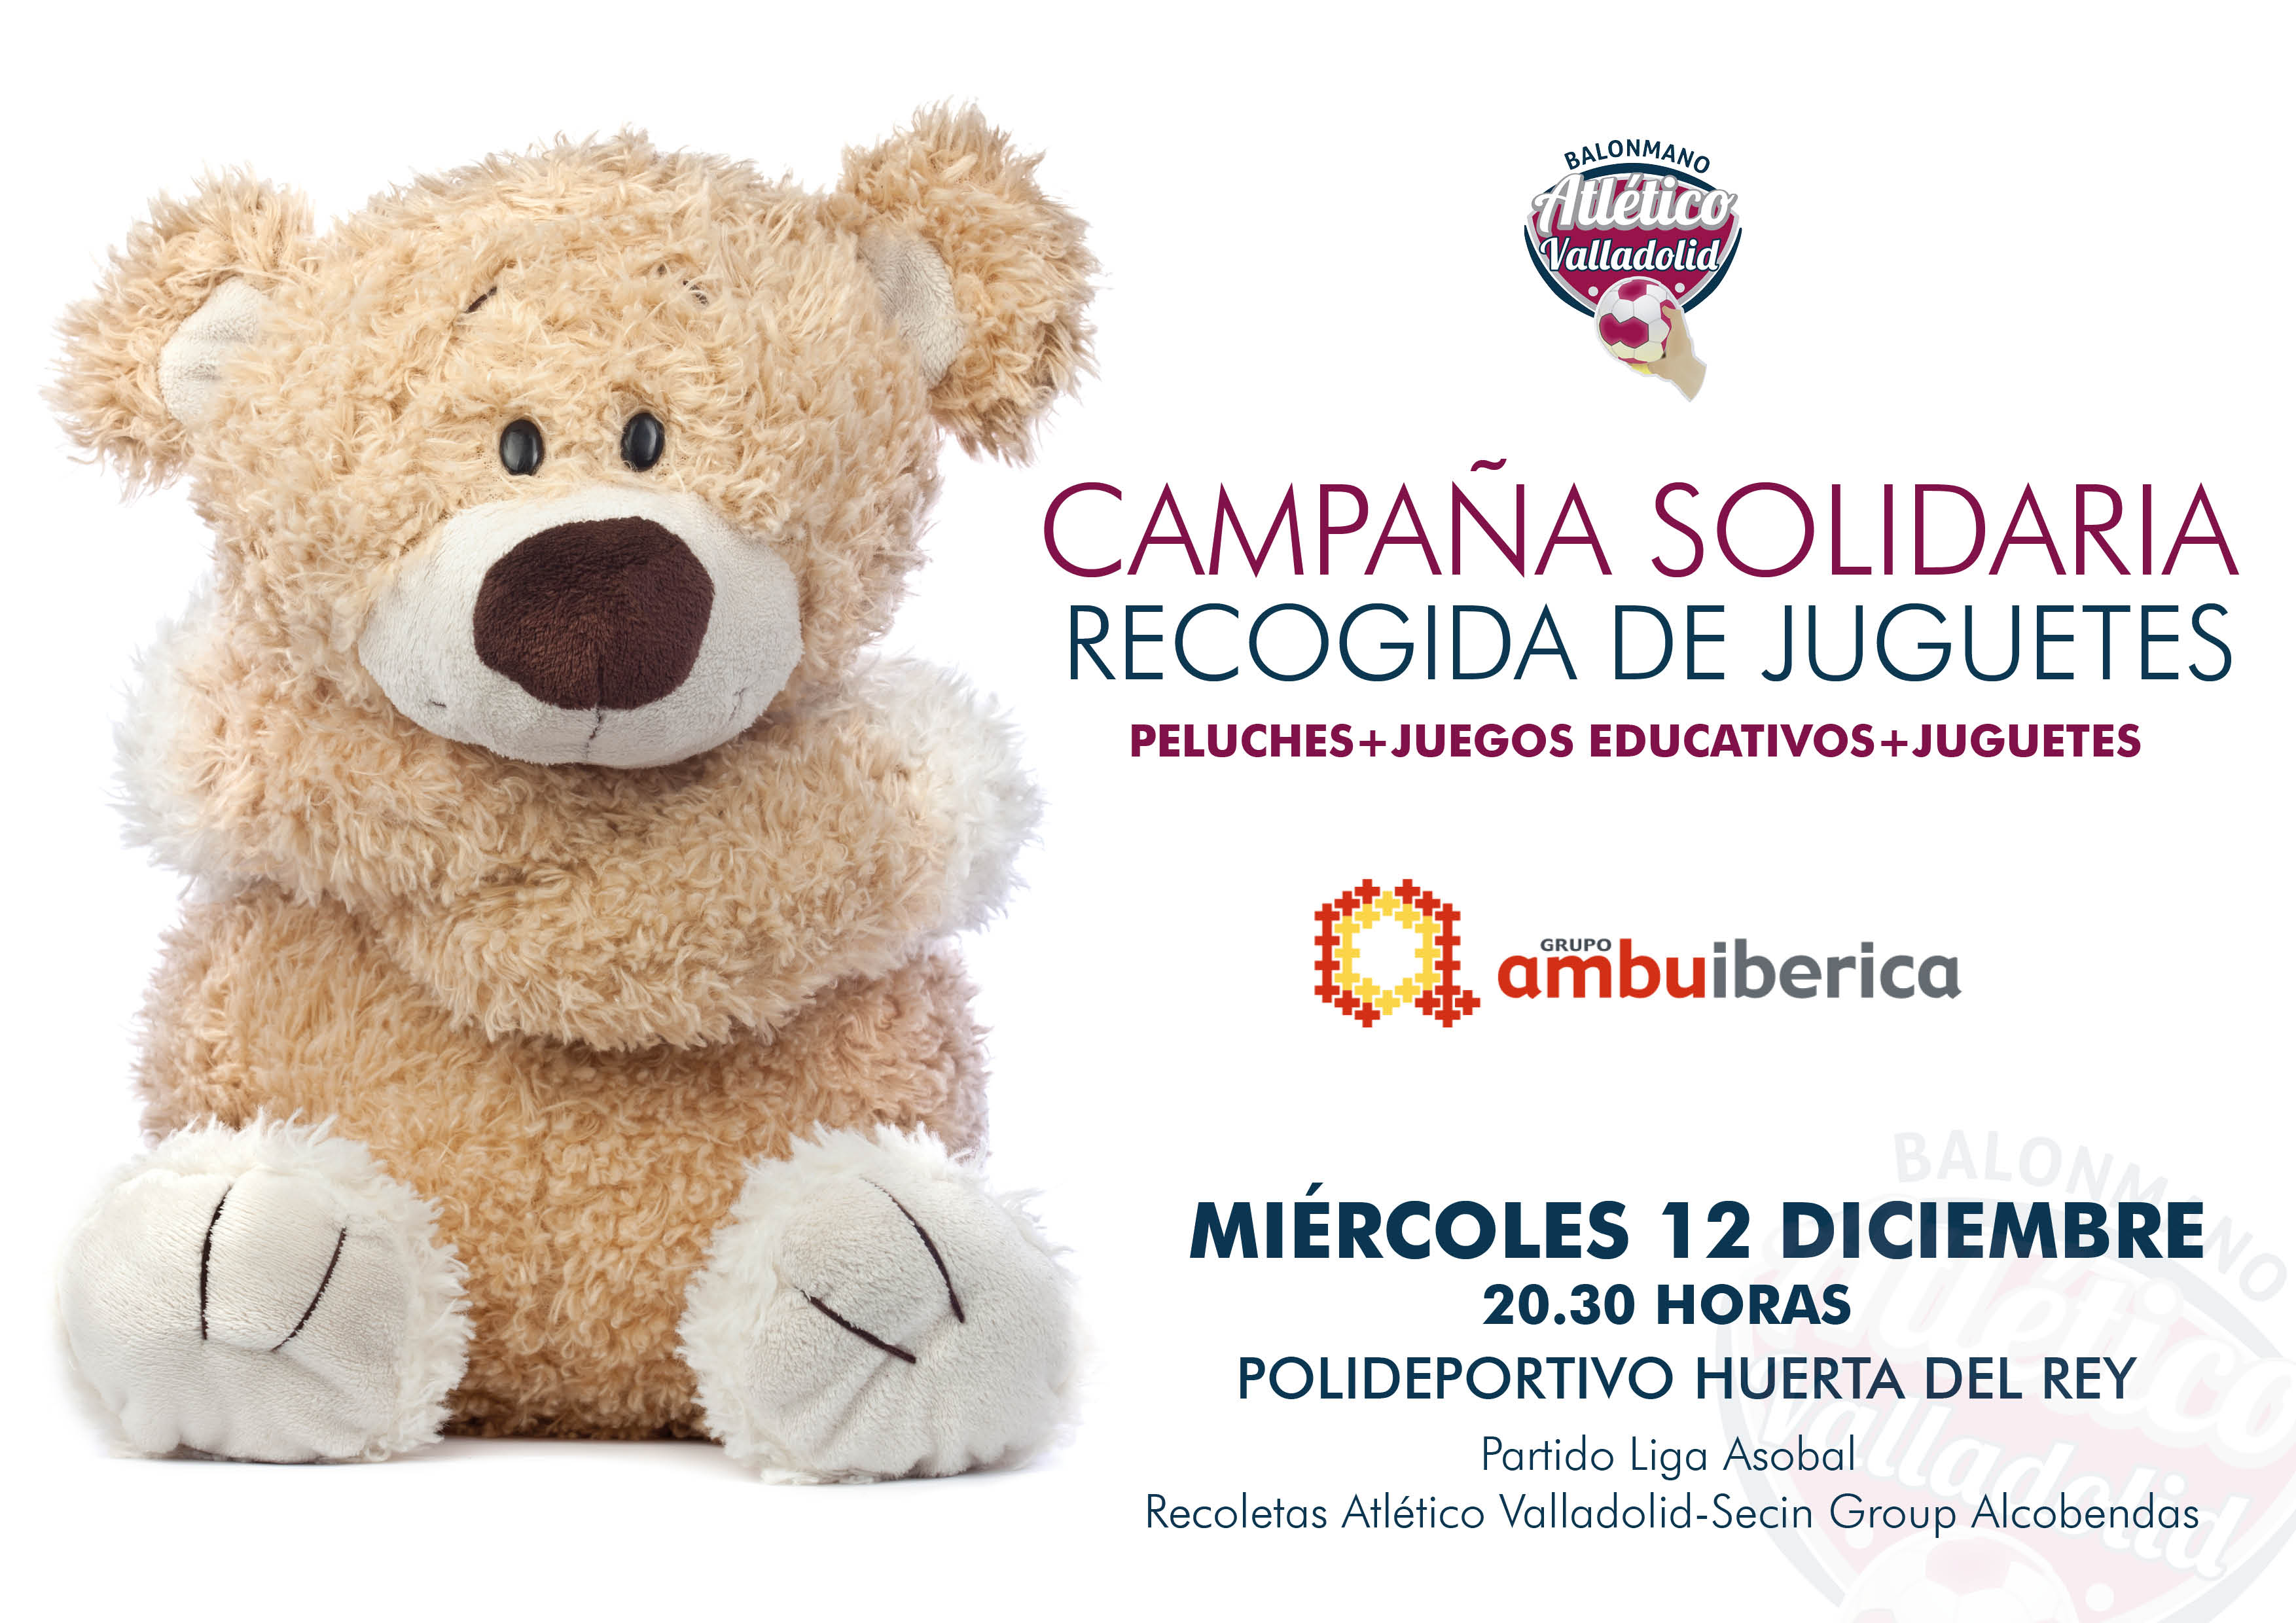 La tradicional Campaña Solidaria de Recogida de Juguetes del Recoletas Atlético Valladolid, el próximo 12 de diciembre